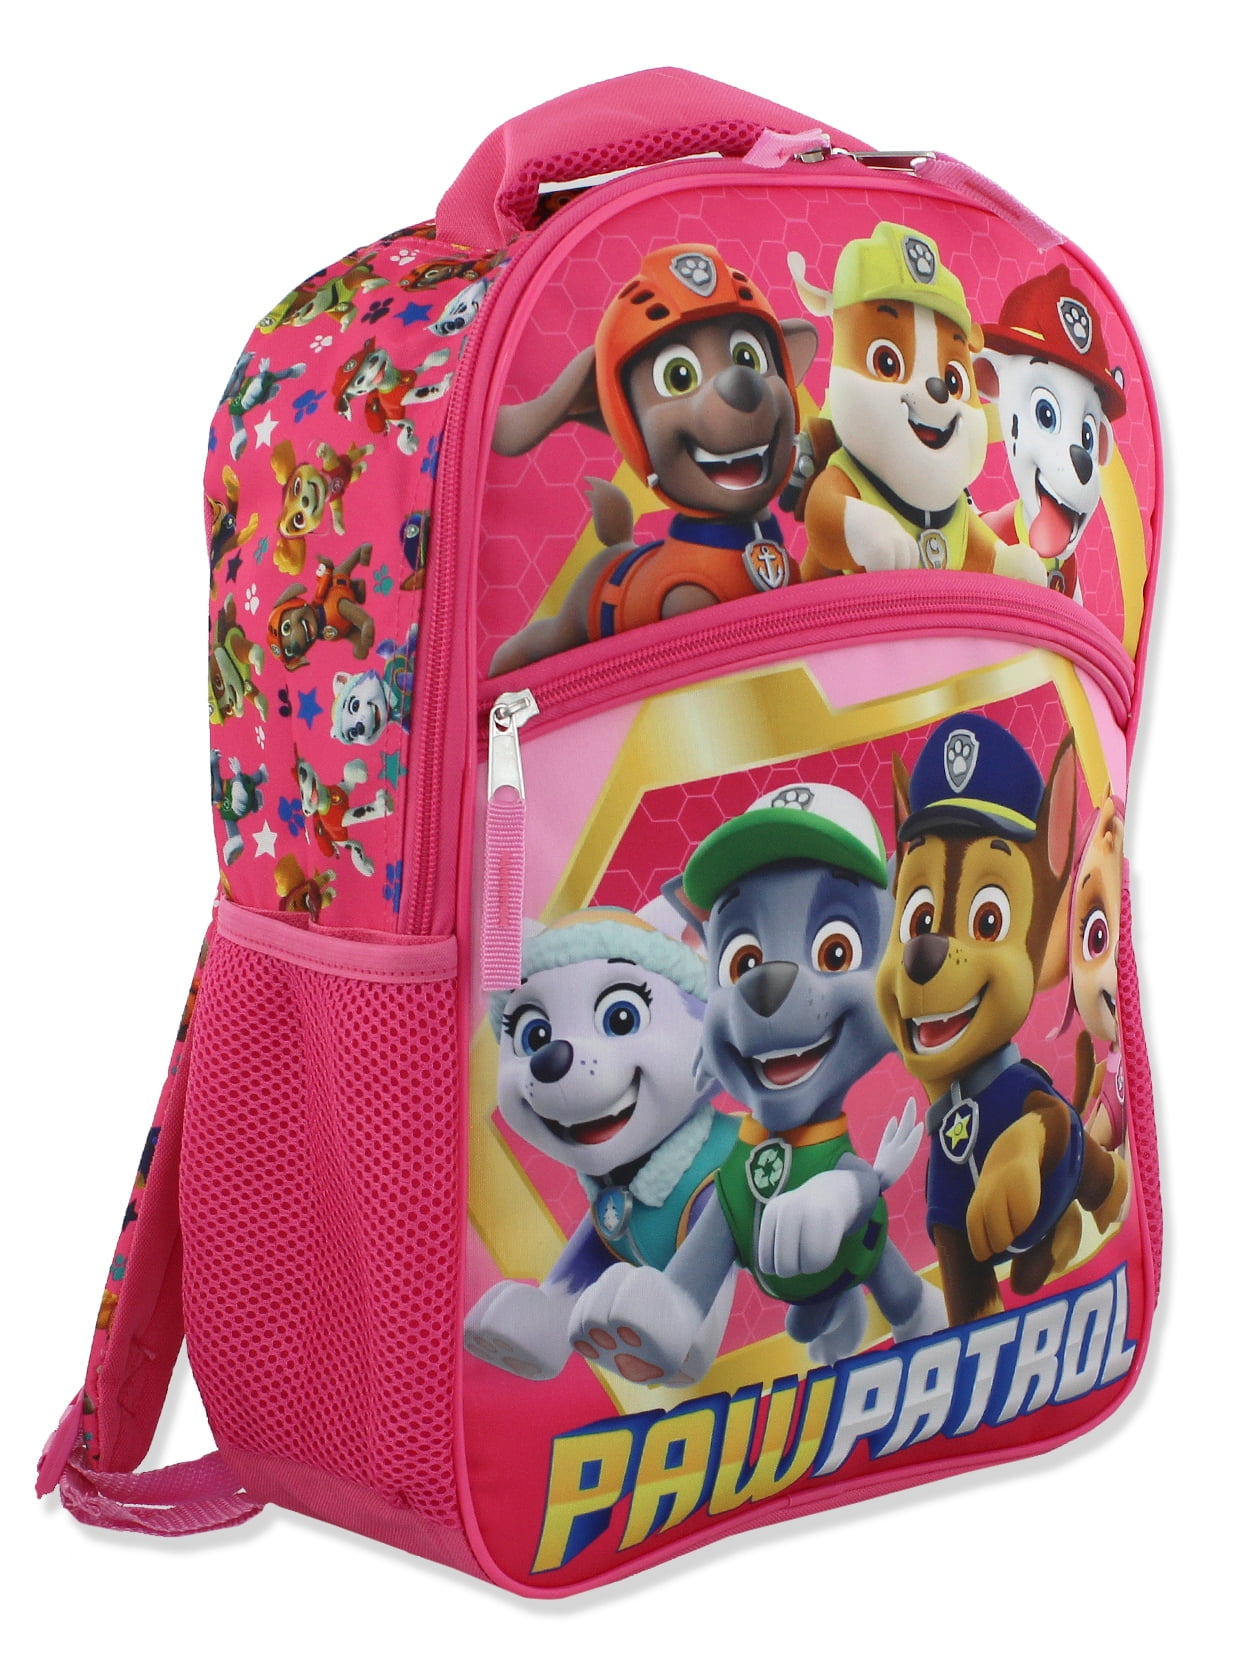 Paw Patrol Pup Heroes Backpack 16 inch Book Bag Nickelodeon School Supplies NEW 